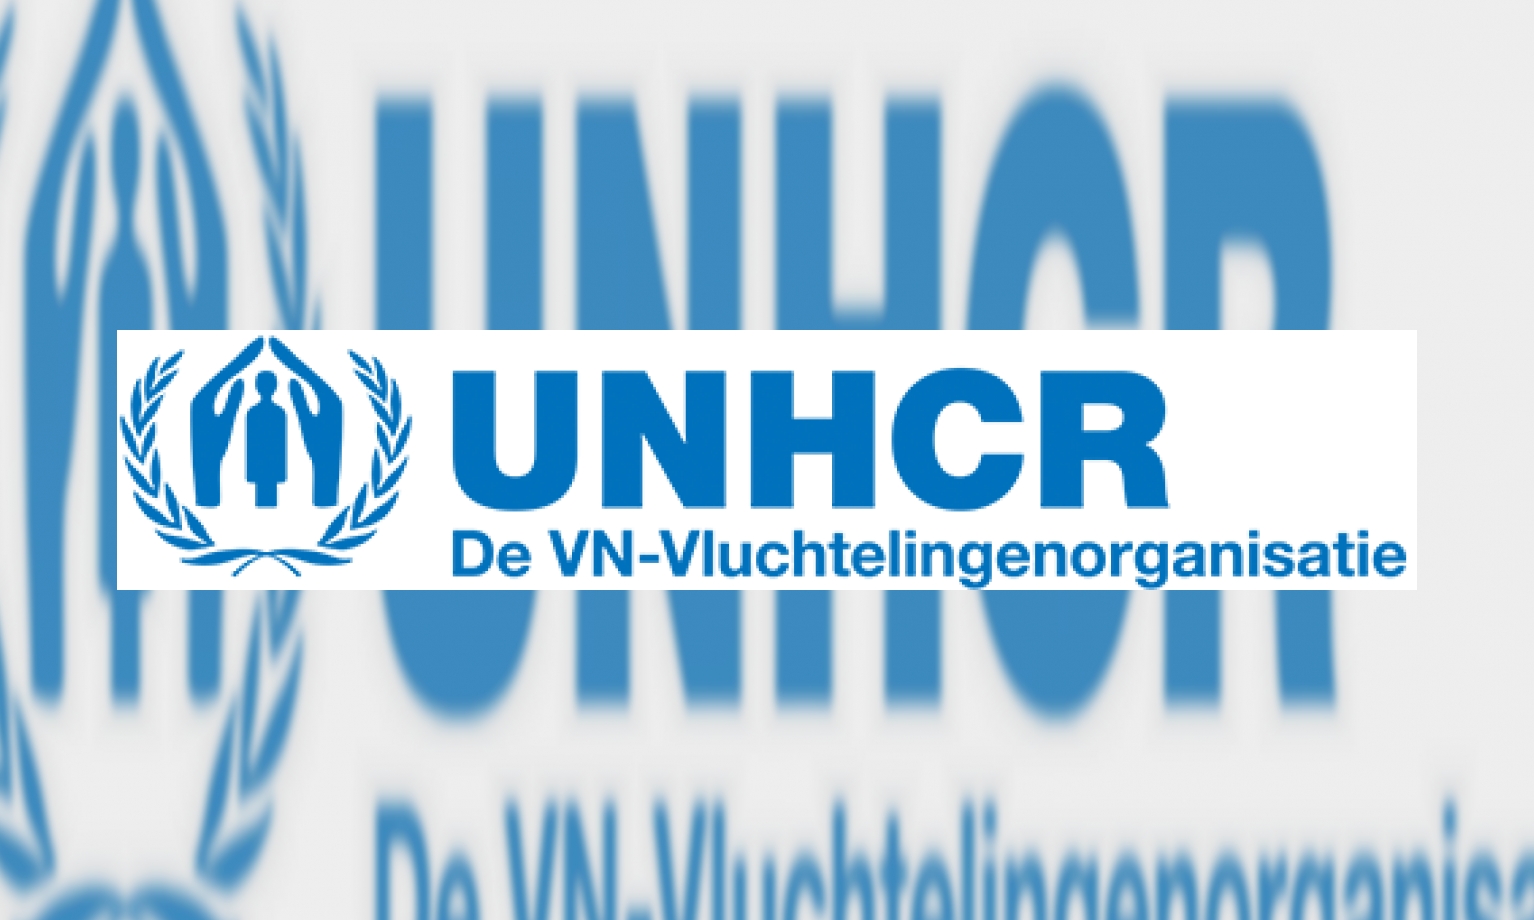 Plaatje De VN-Vluchtelingenorganisatie